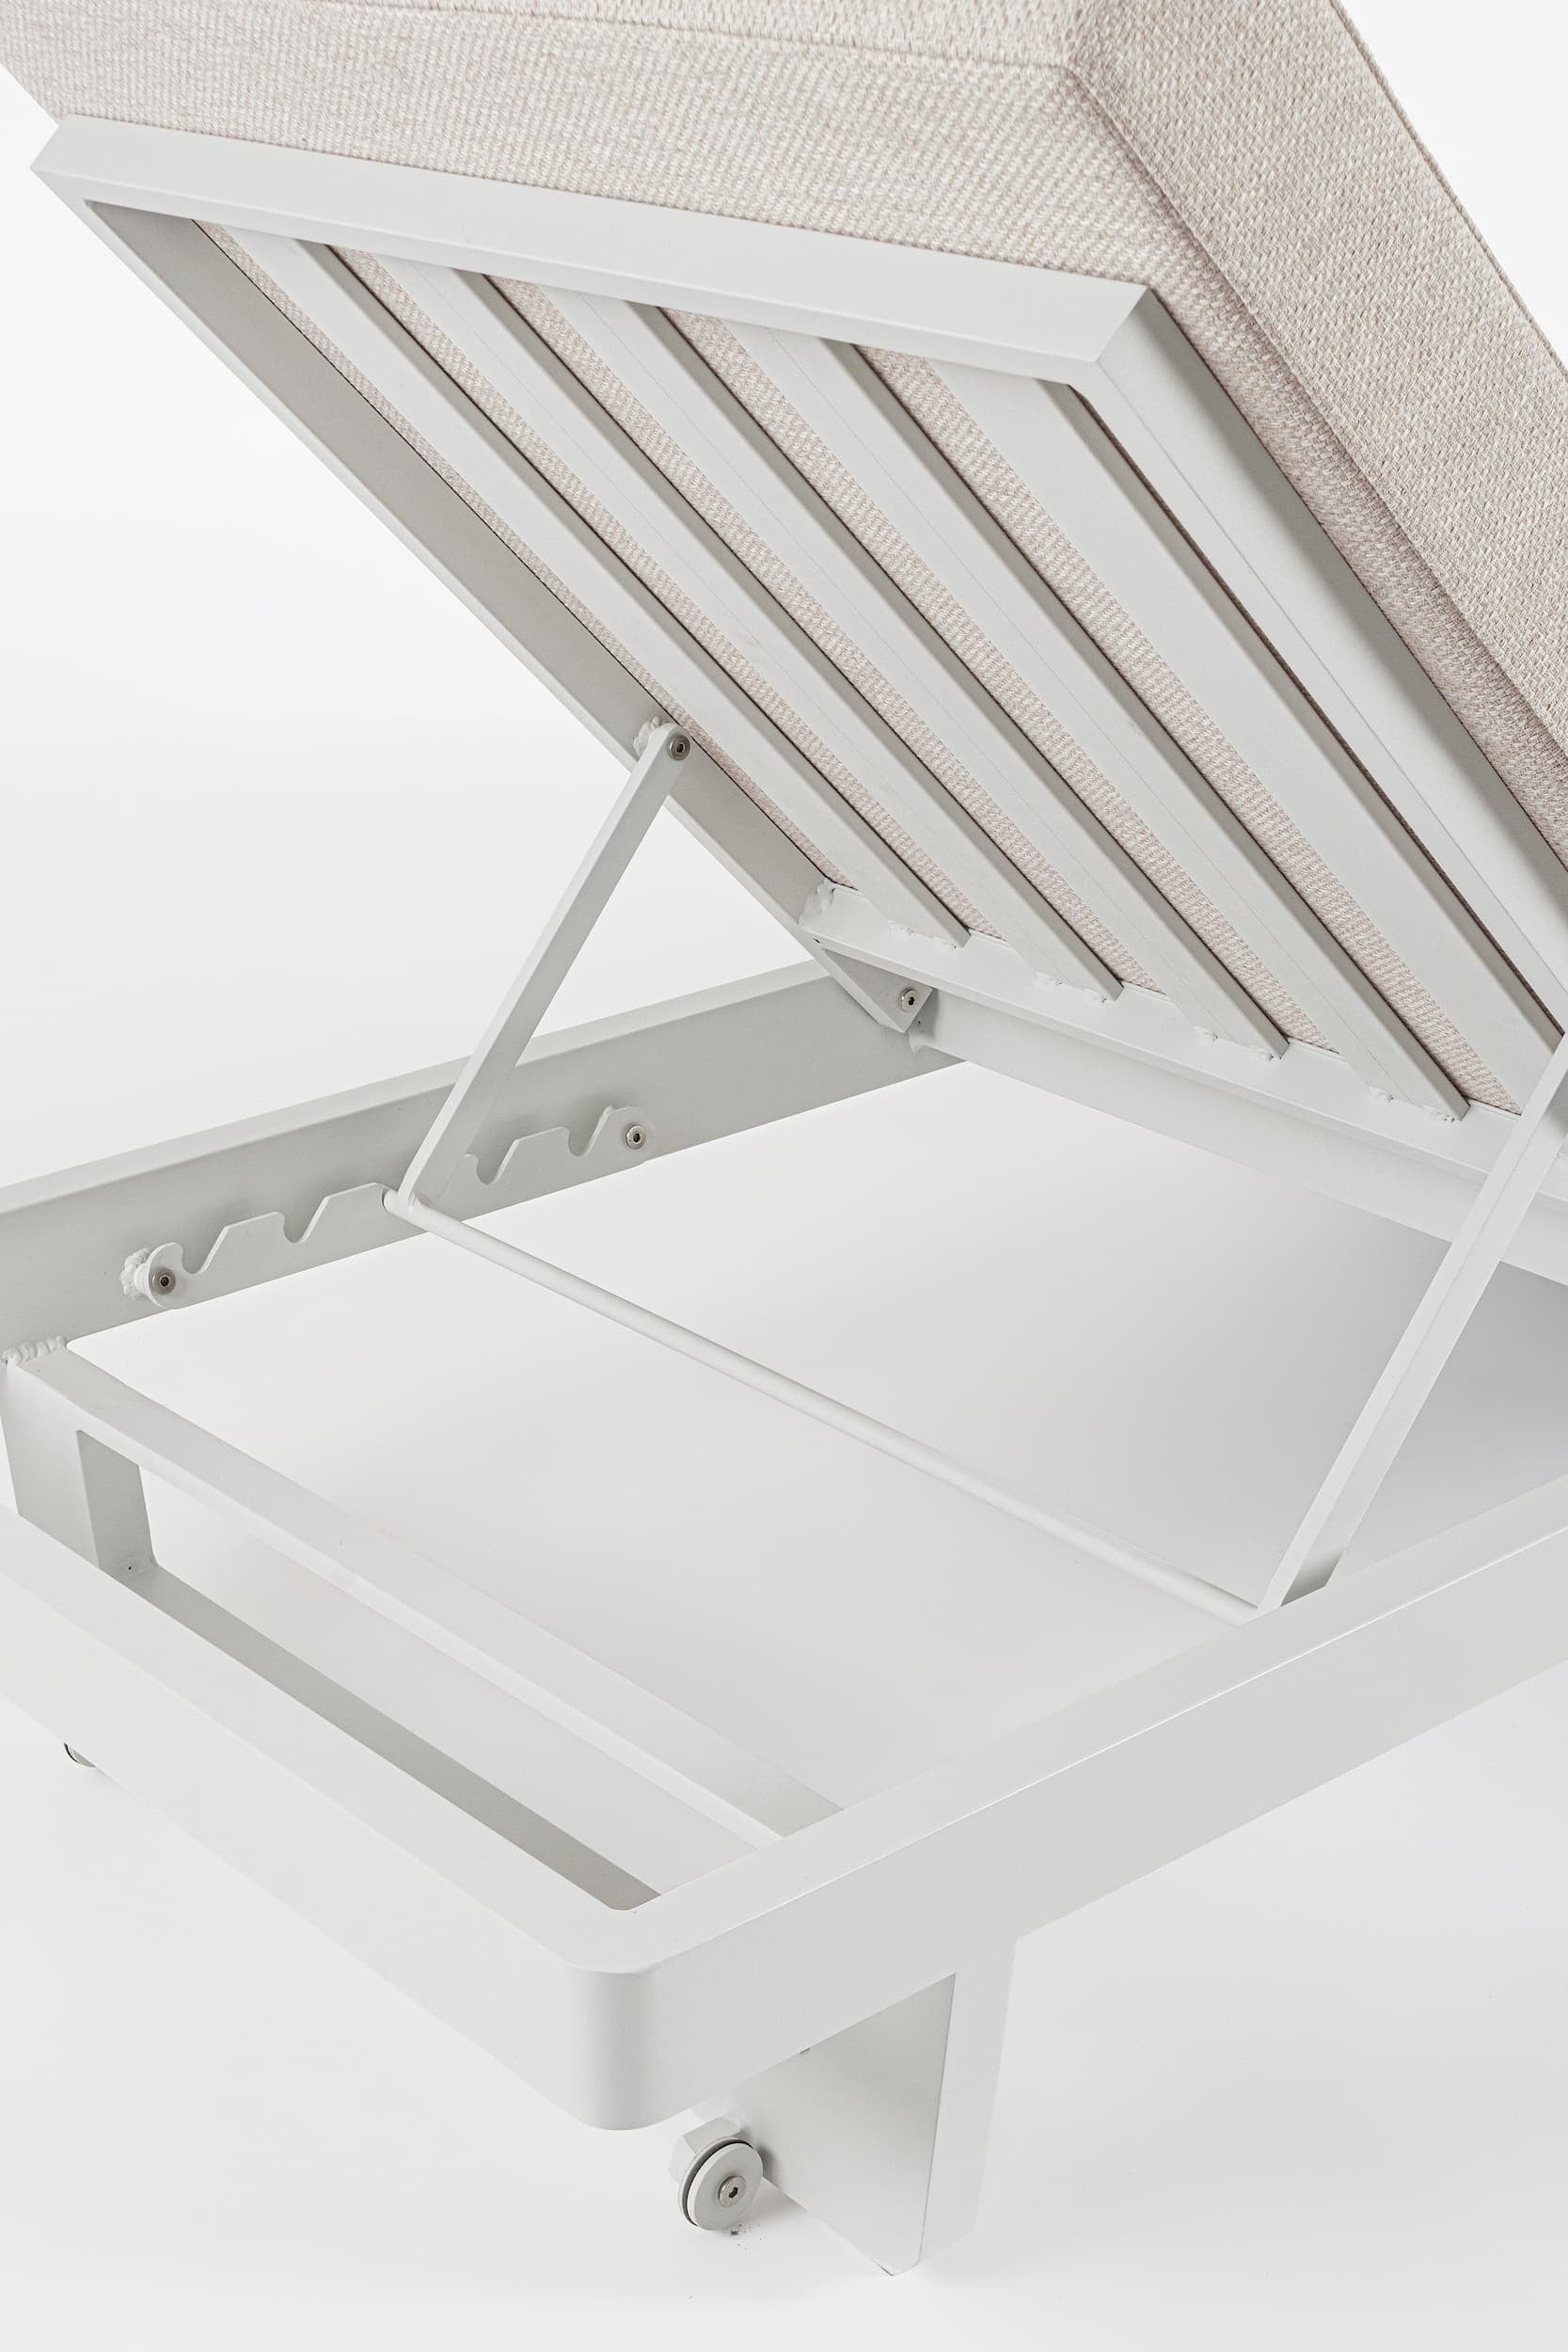 Sezlong pentru gradina / terasa, din aluminiu si material textil, Infinity Alb, l72xA195xH95 cm (6)